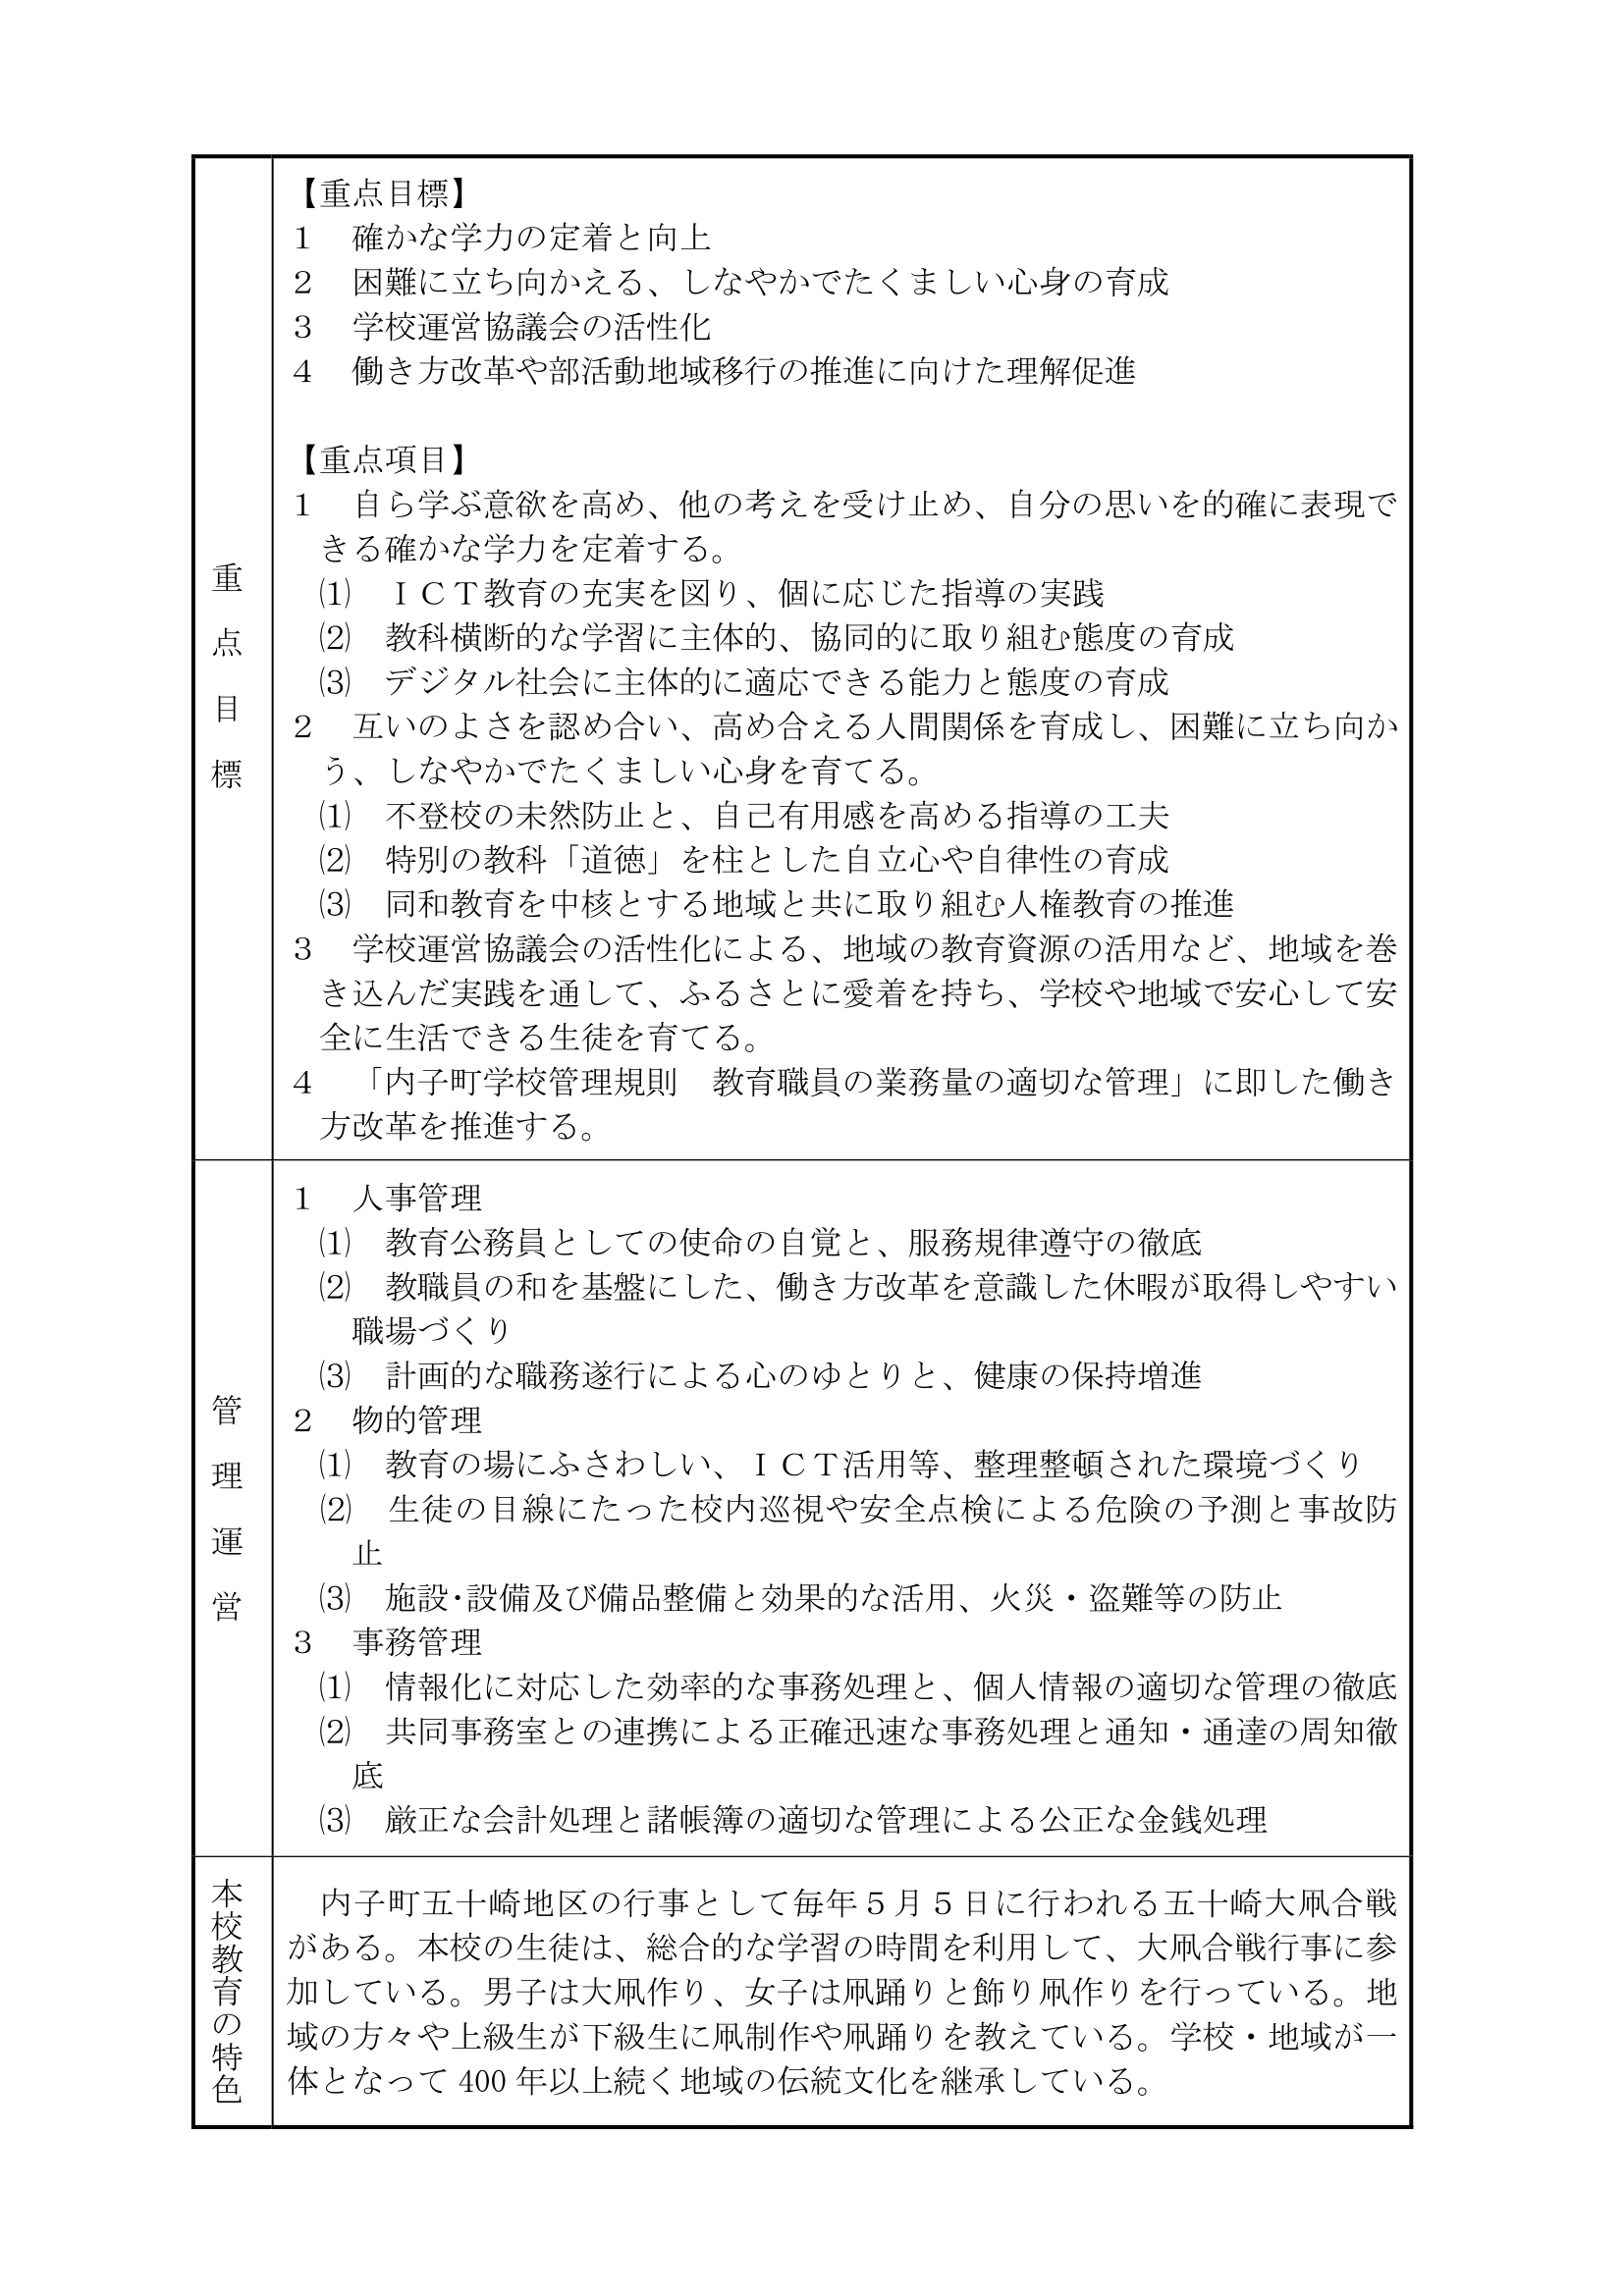 03 ・ｲ・悶謨呵ご險育判縲PDF-2